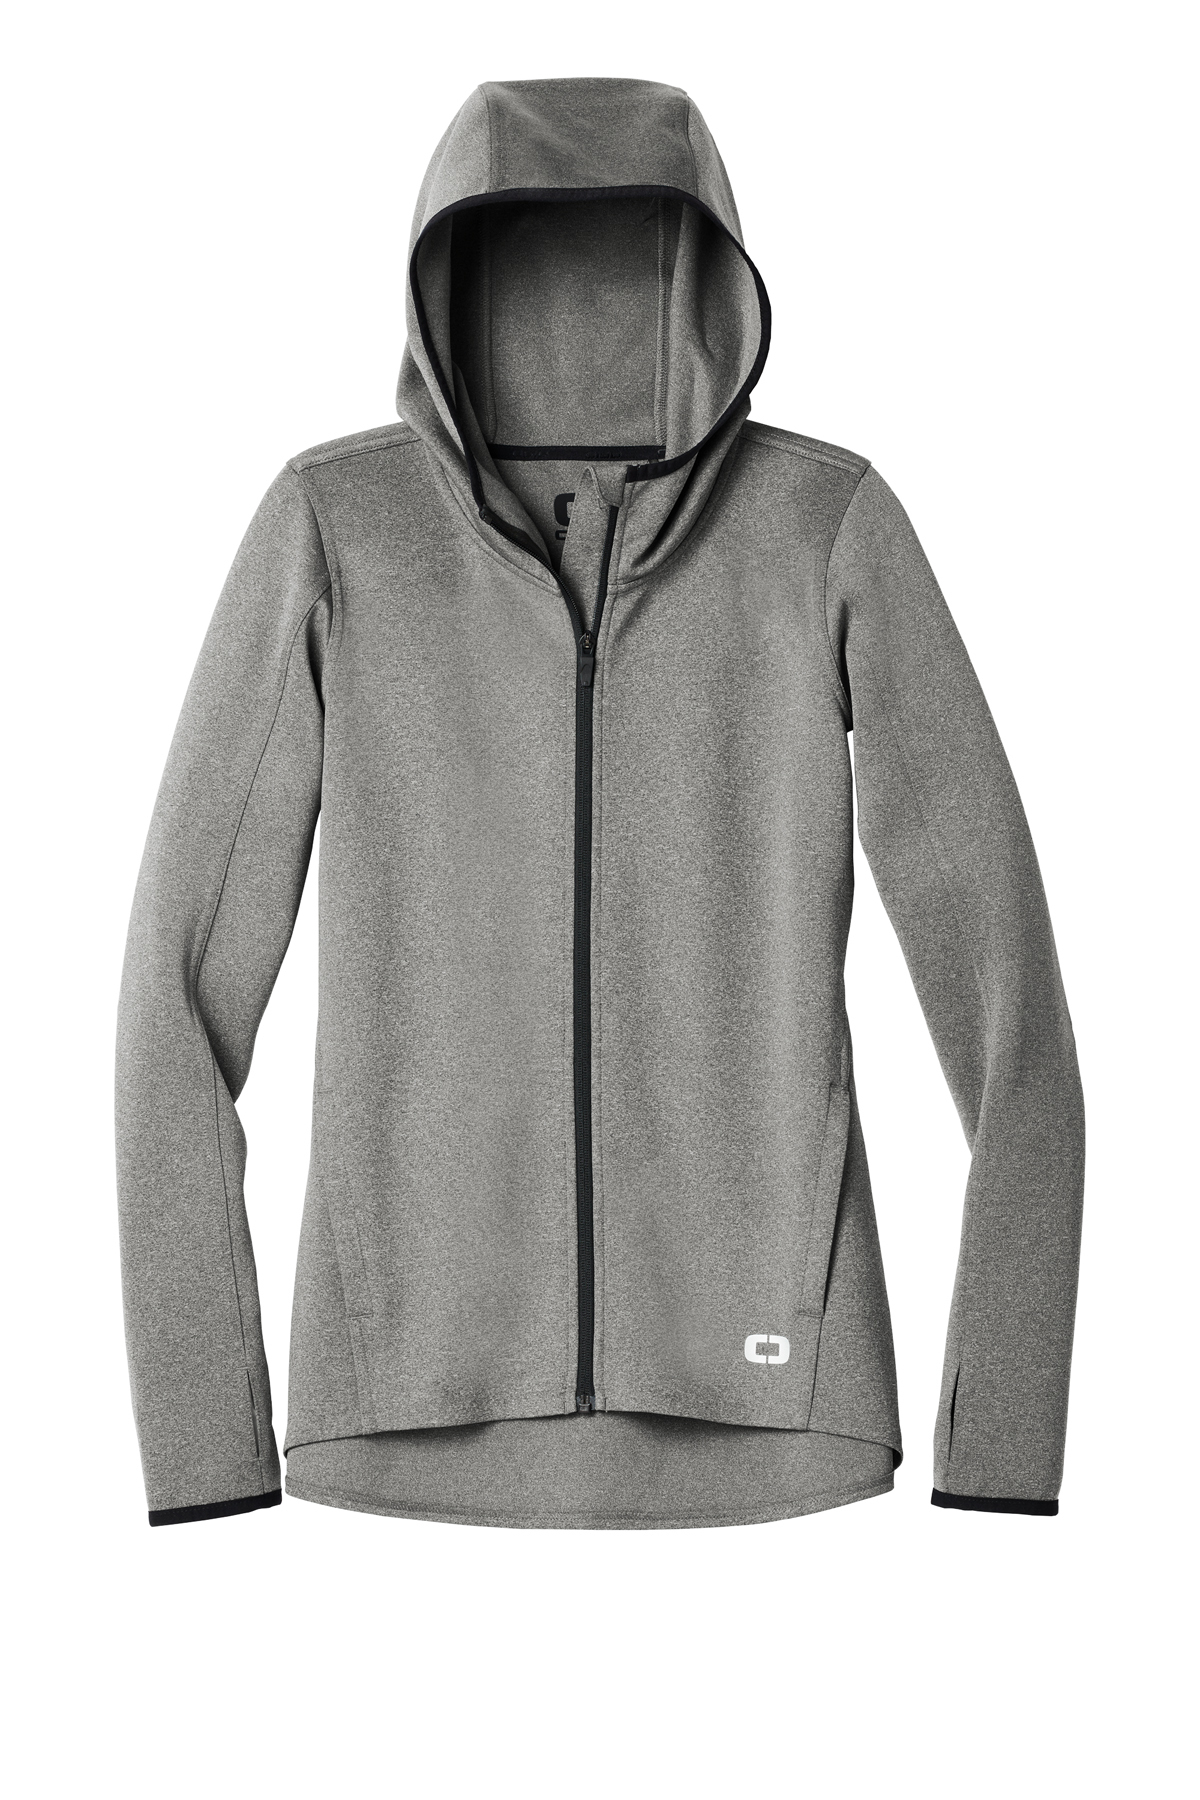 OGIO Ladies Stealth Full-Zip Jacket | Product | SanMar